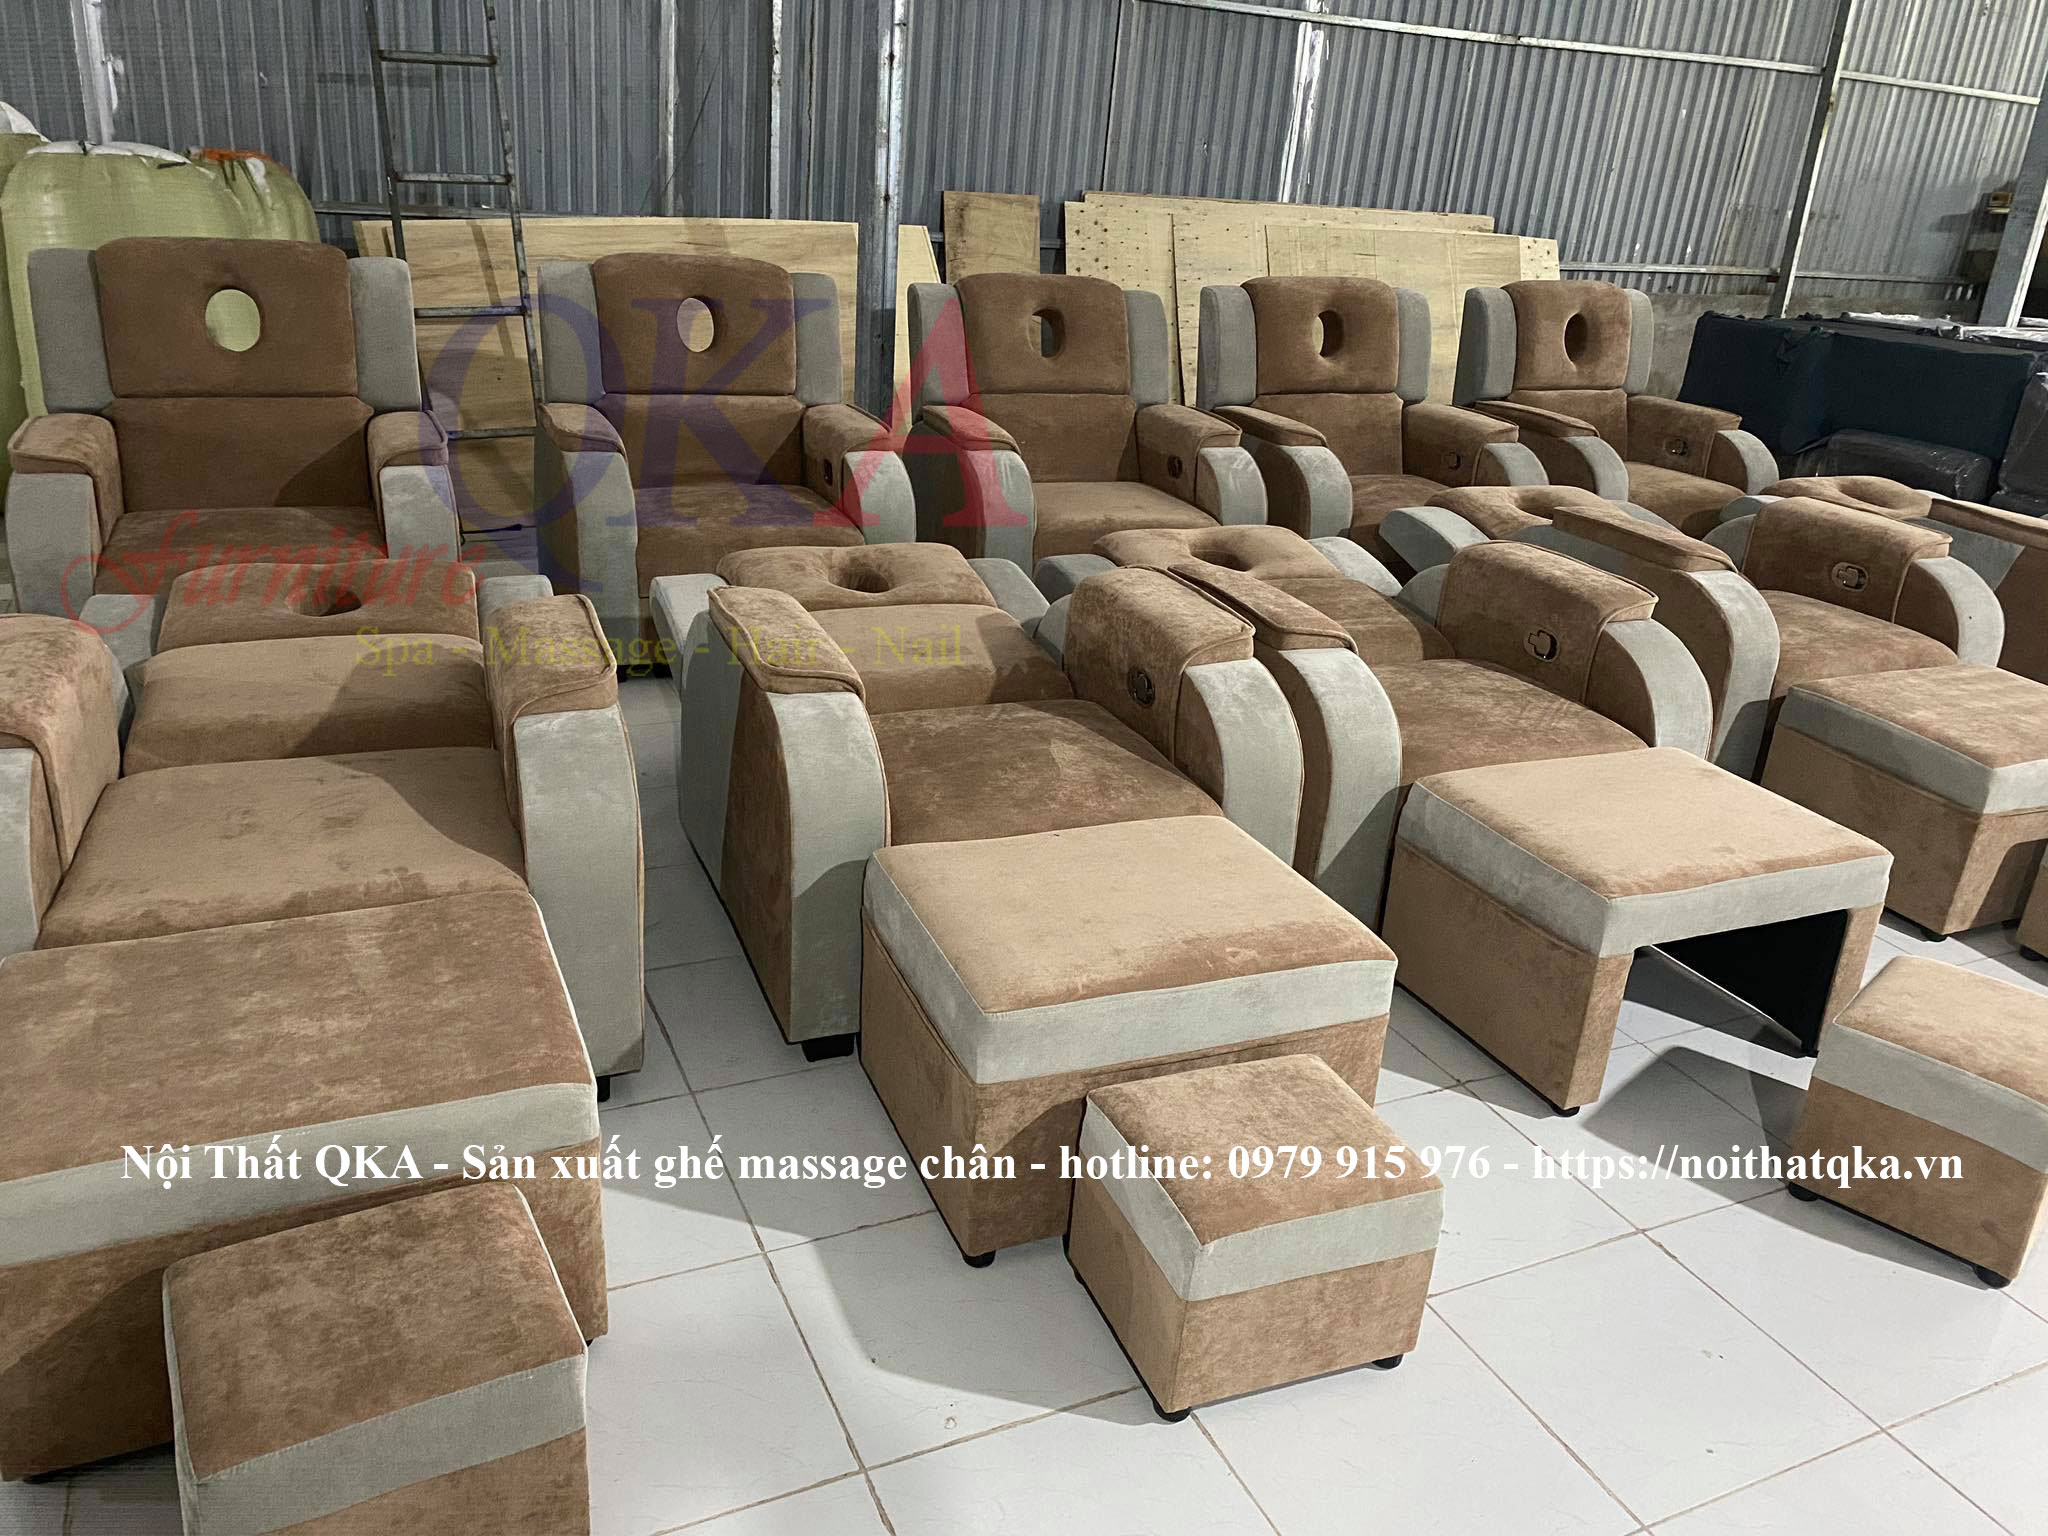 4 Xưởng sản xuất Ghế Massage Chân - Nhận làm ghế foot theo yêu cầu.